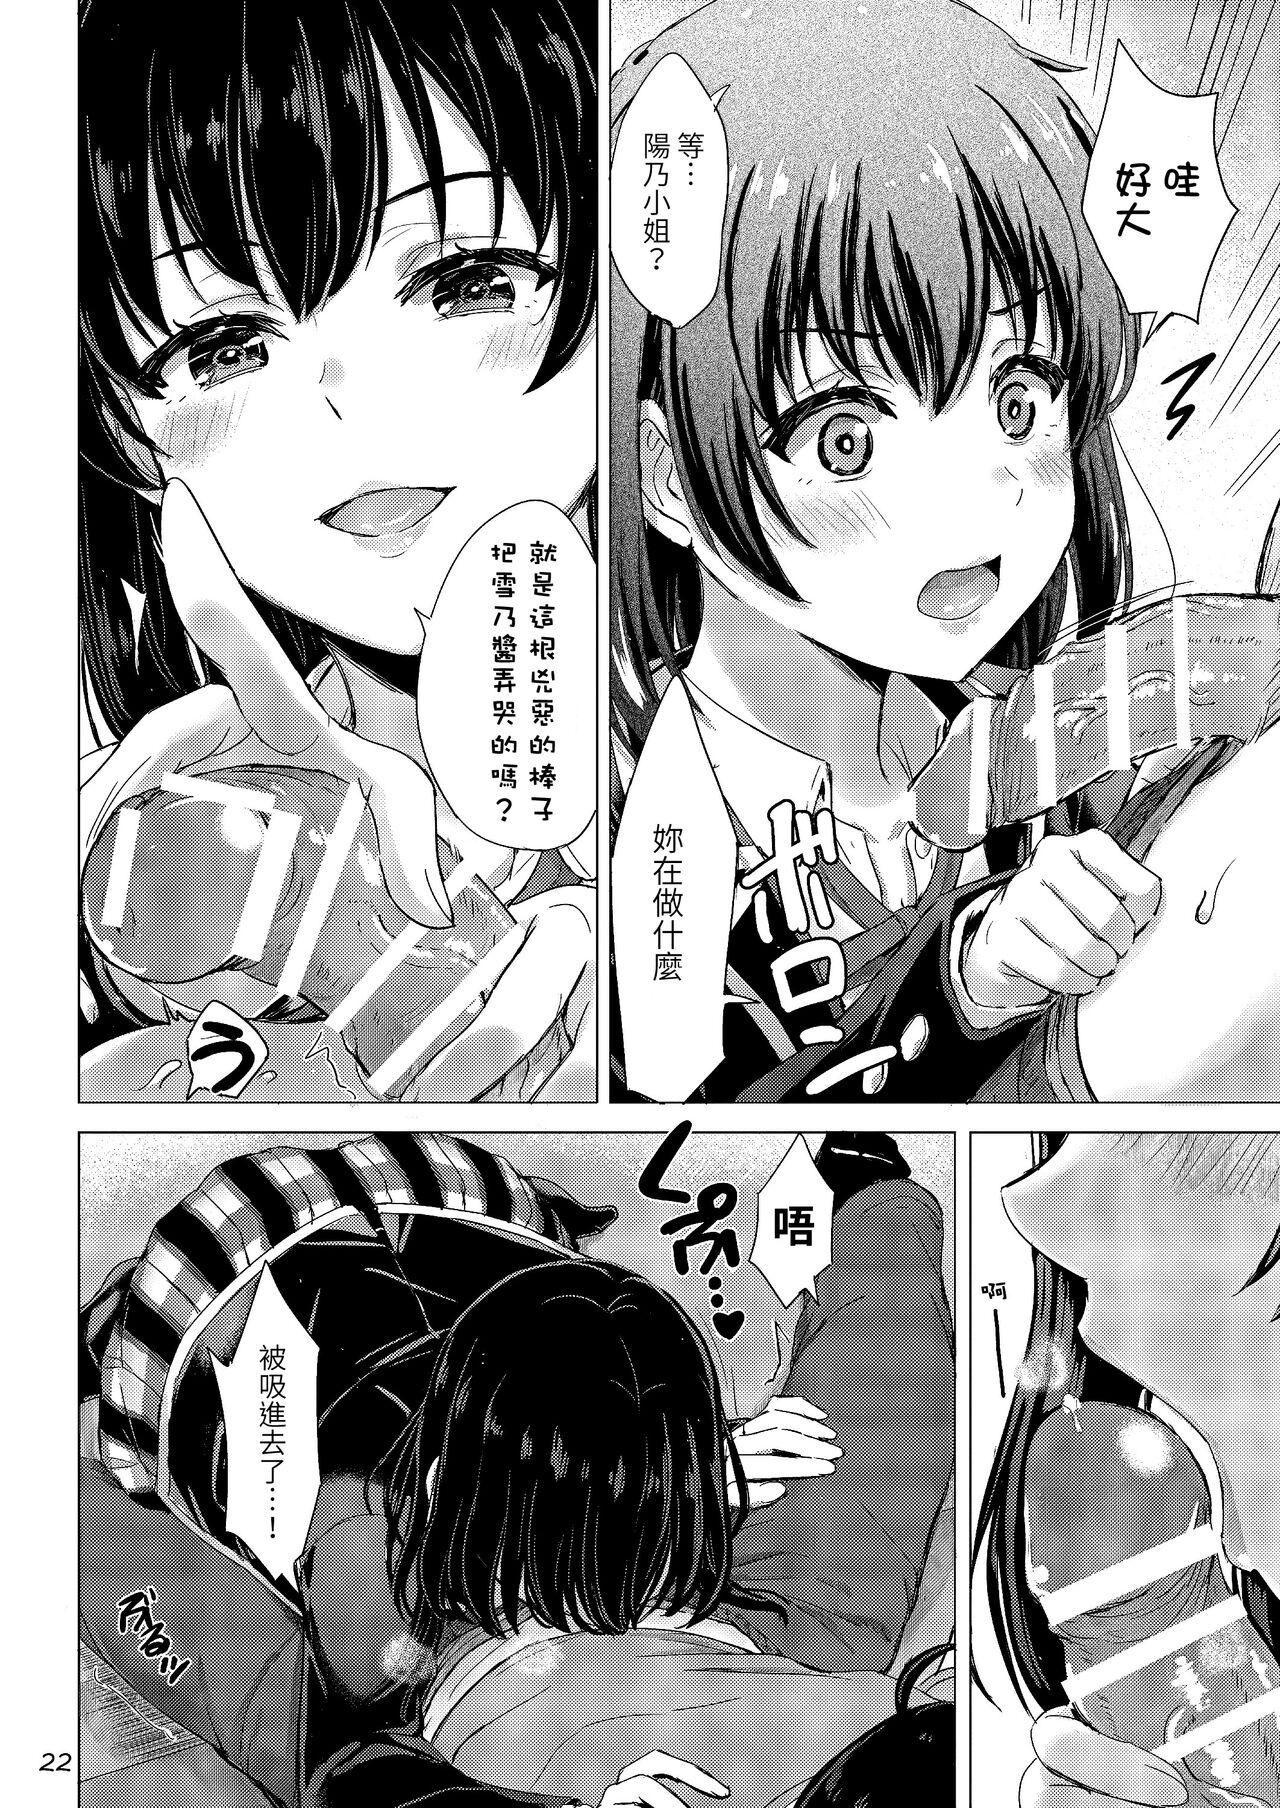 Yukinoshita Shimai to Iyarashii Futari no Himegoto. - The Yukinoshita sisters each have sex with hachiman. 21